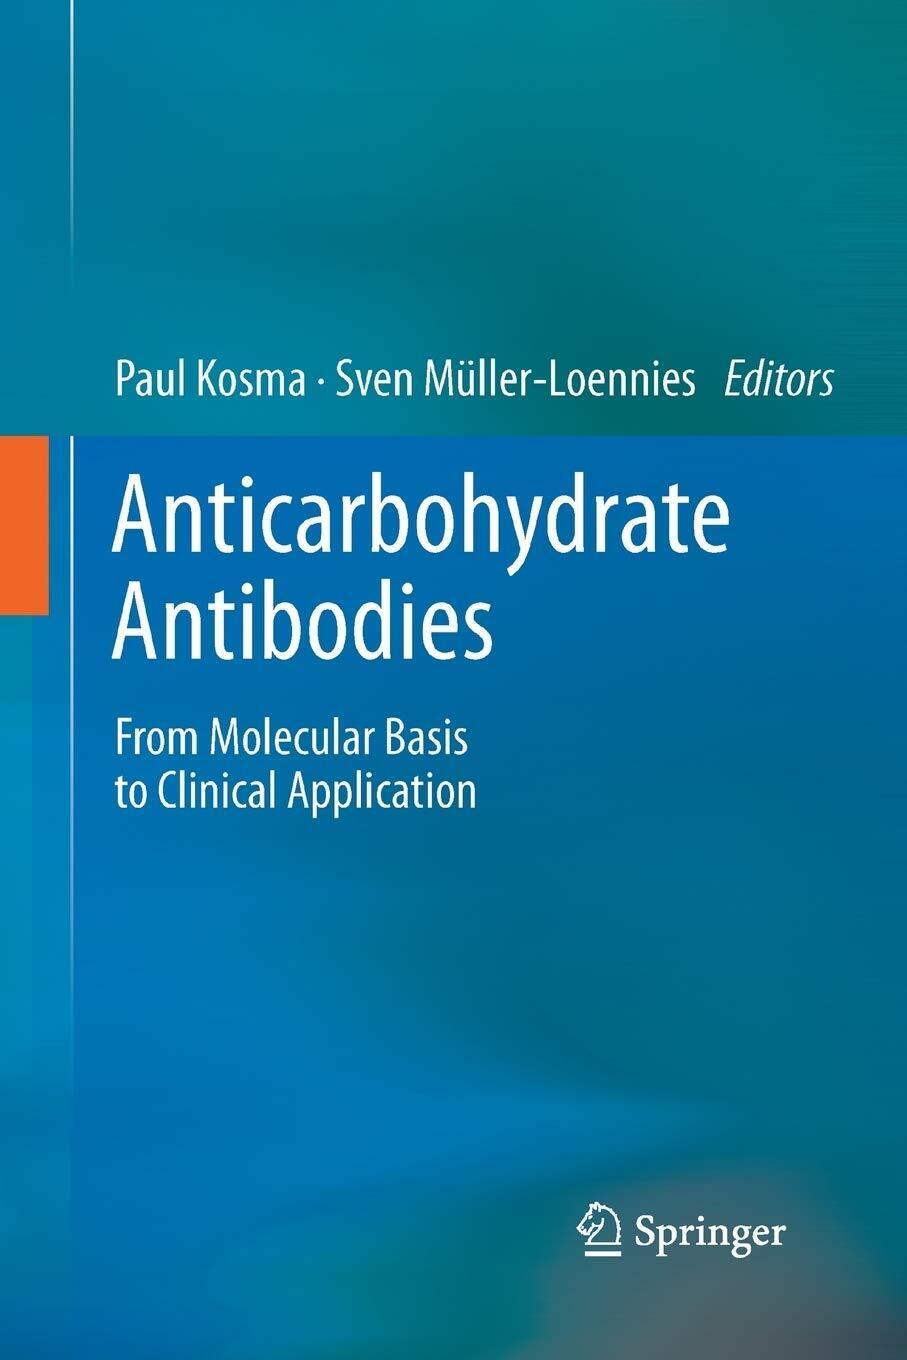 Anticarbohydrate Antibodies - Paul Kosma - Springer, 2016